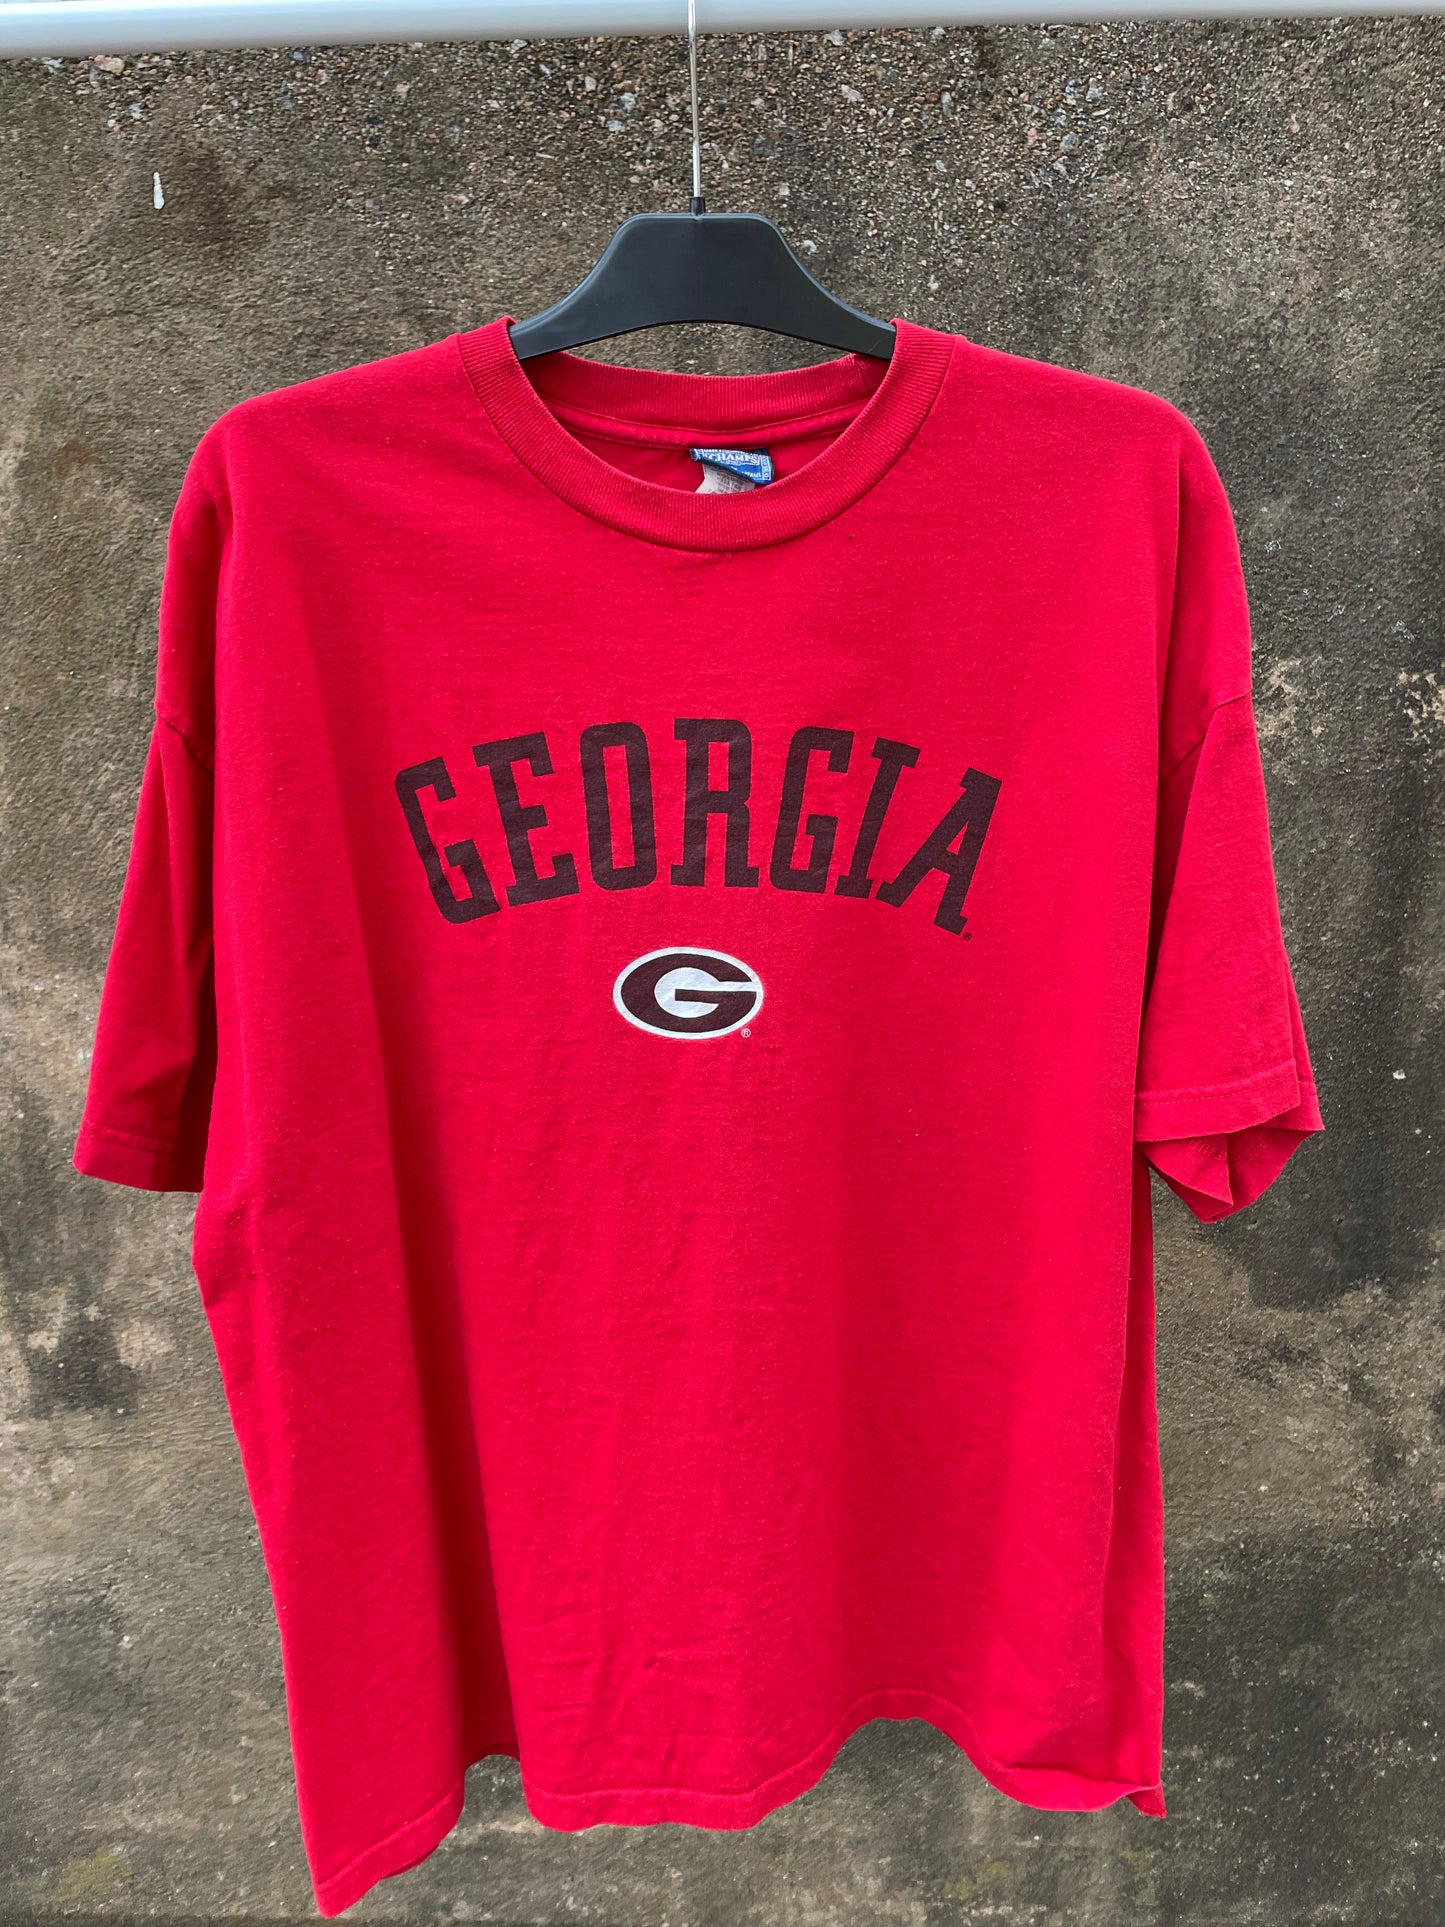 Georgia T-shirt